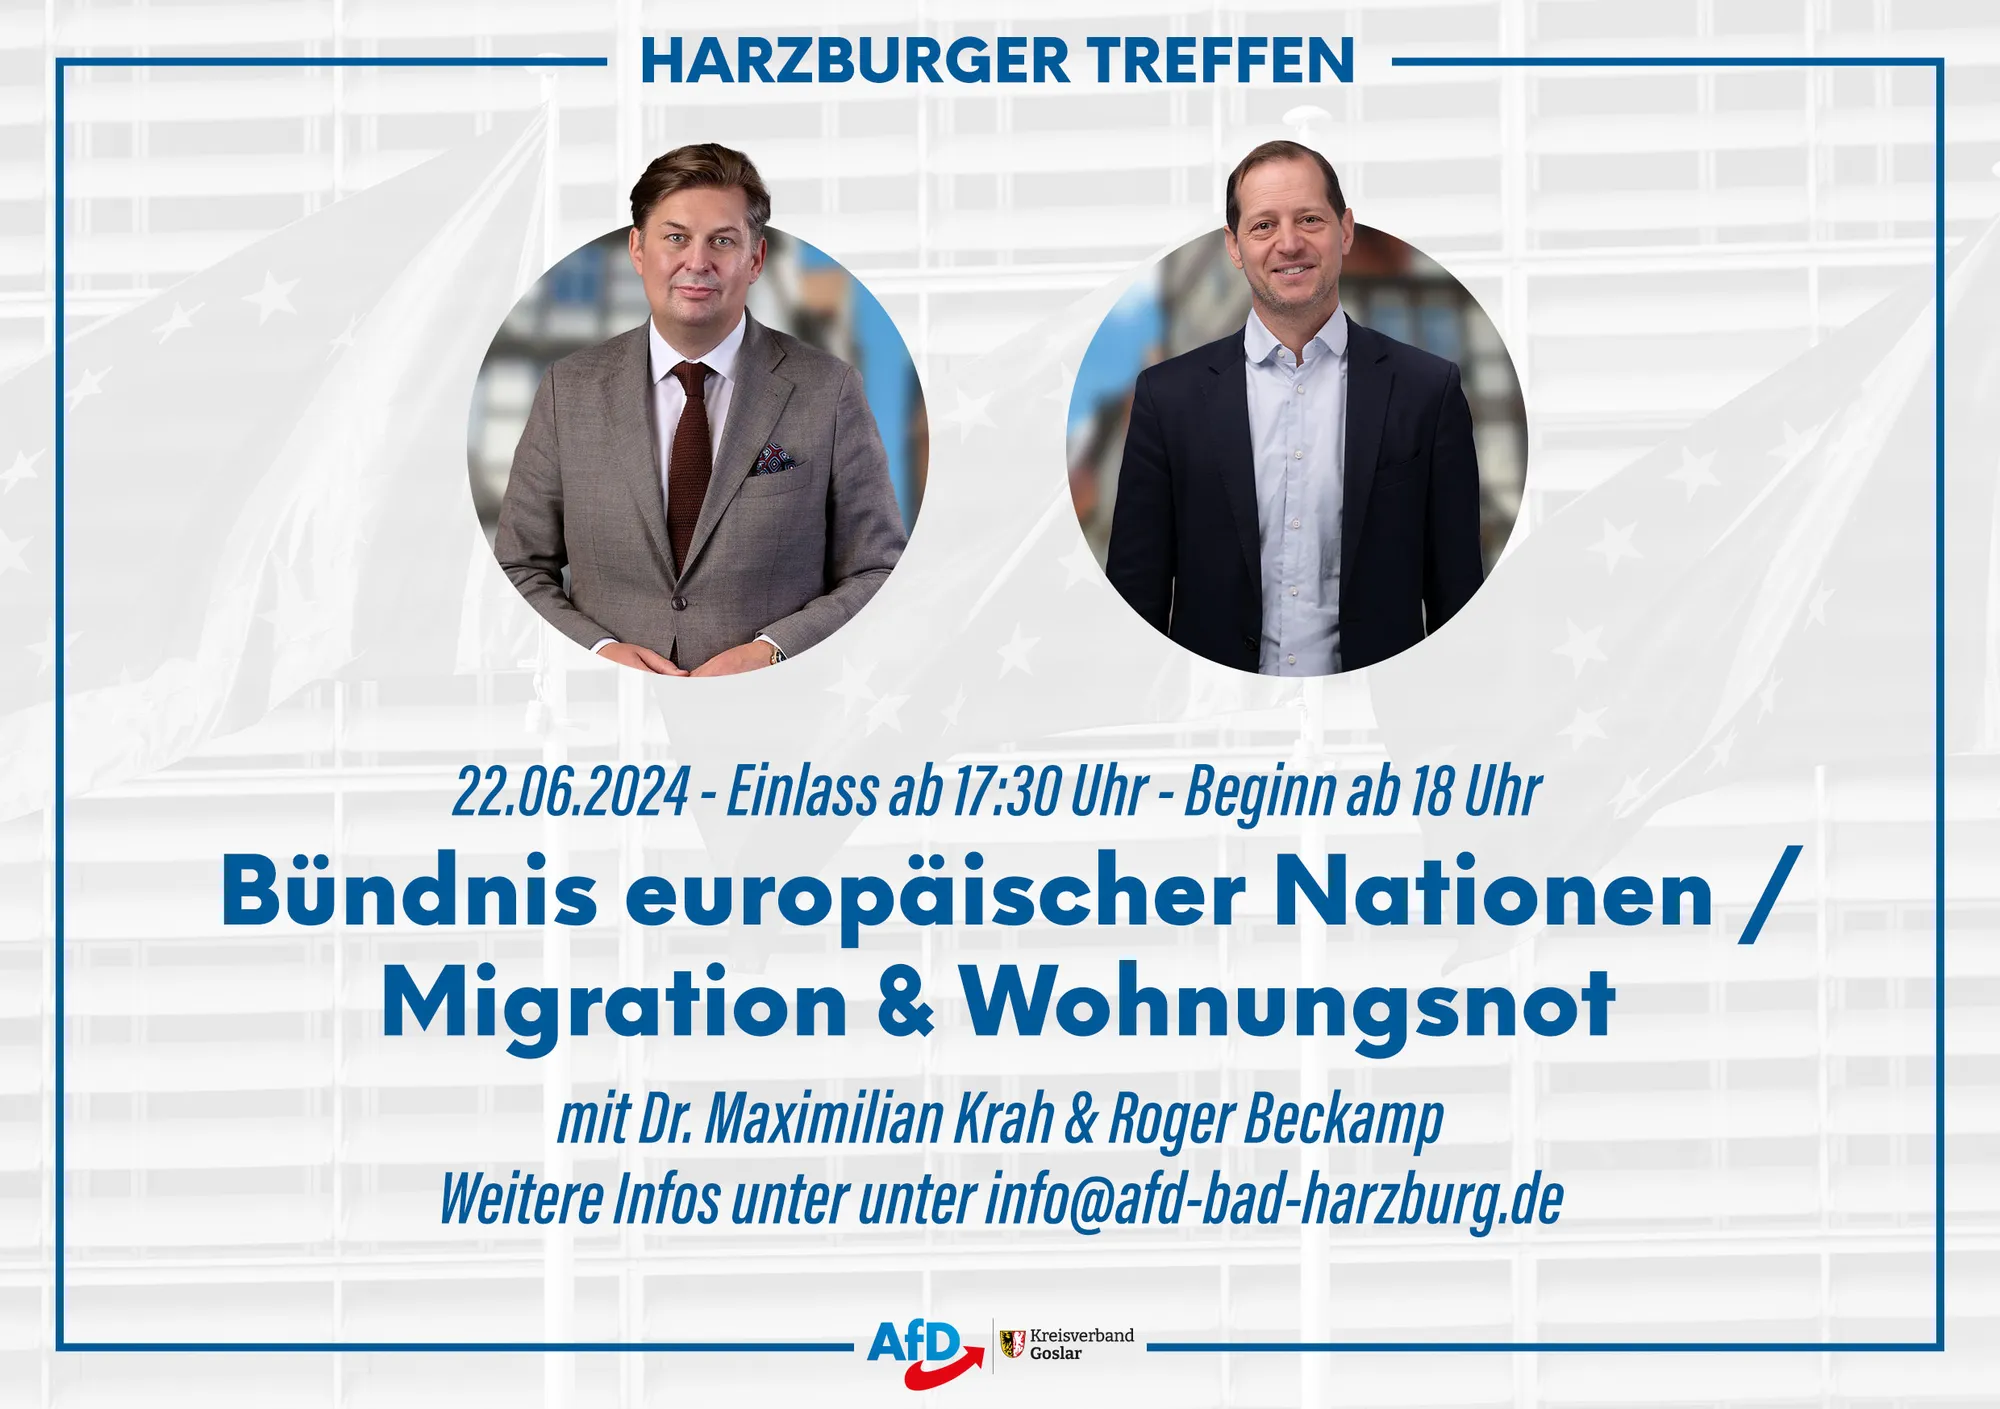 Harzburger-Treffen